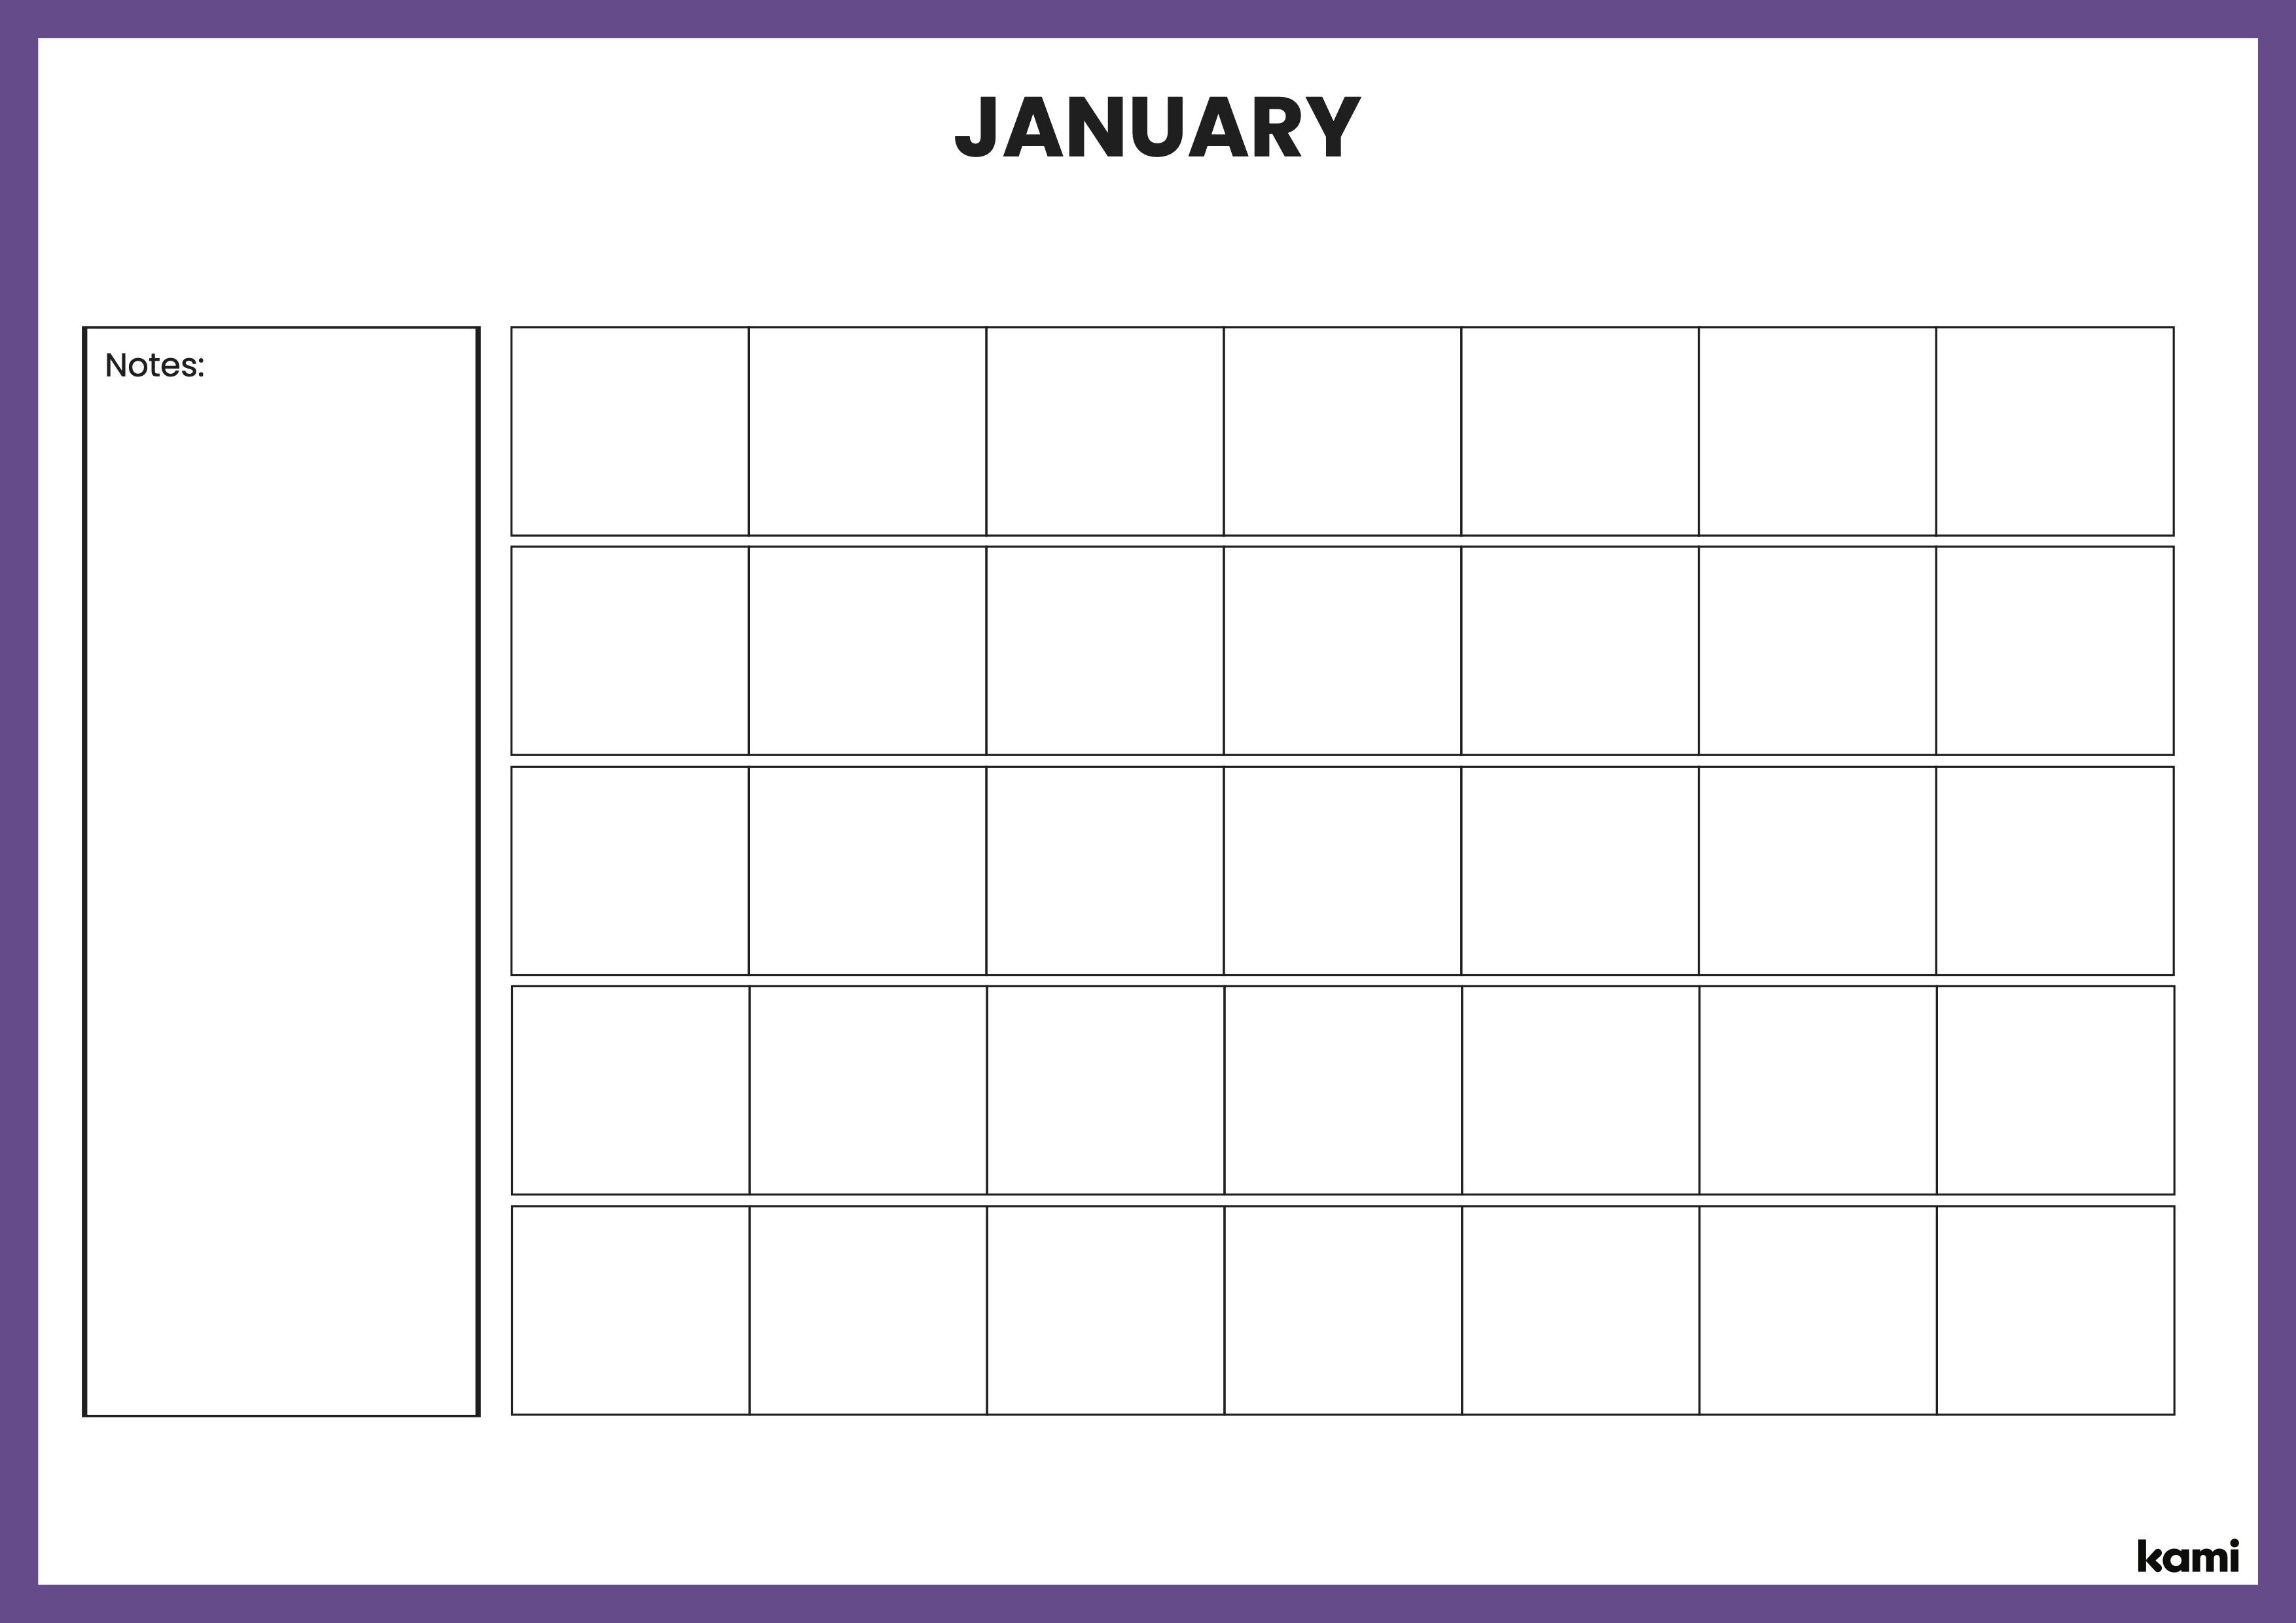 A classroom calendar for teachers with a purple theme